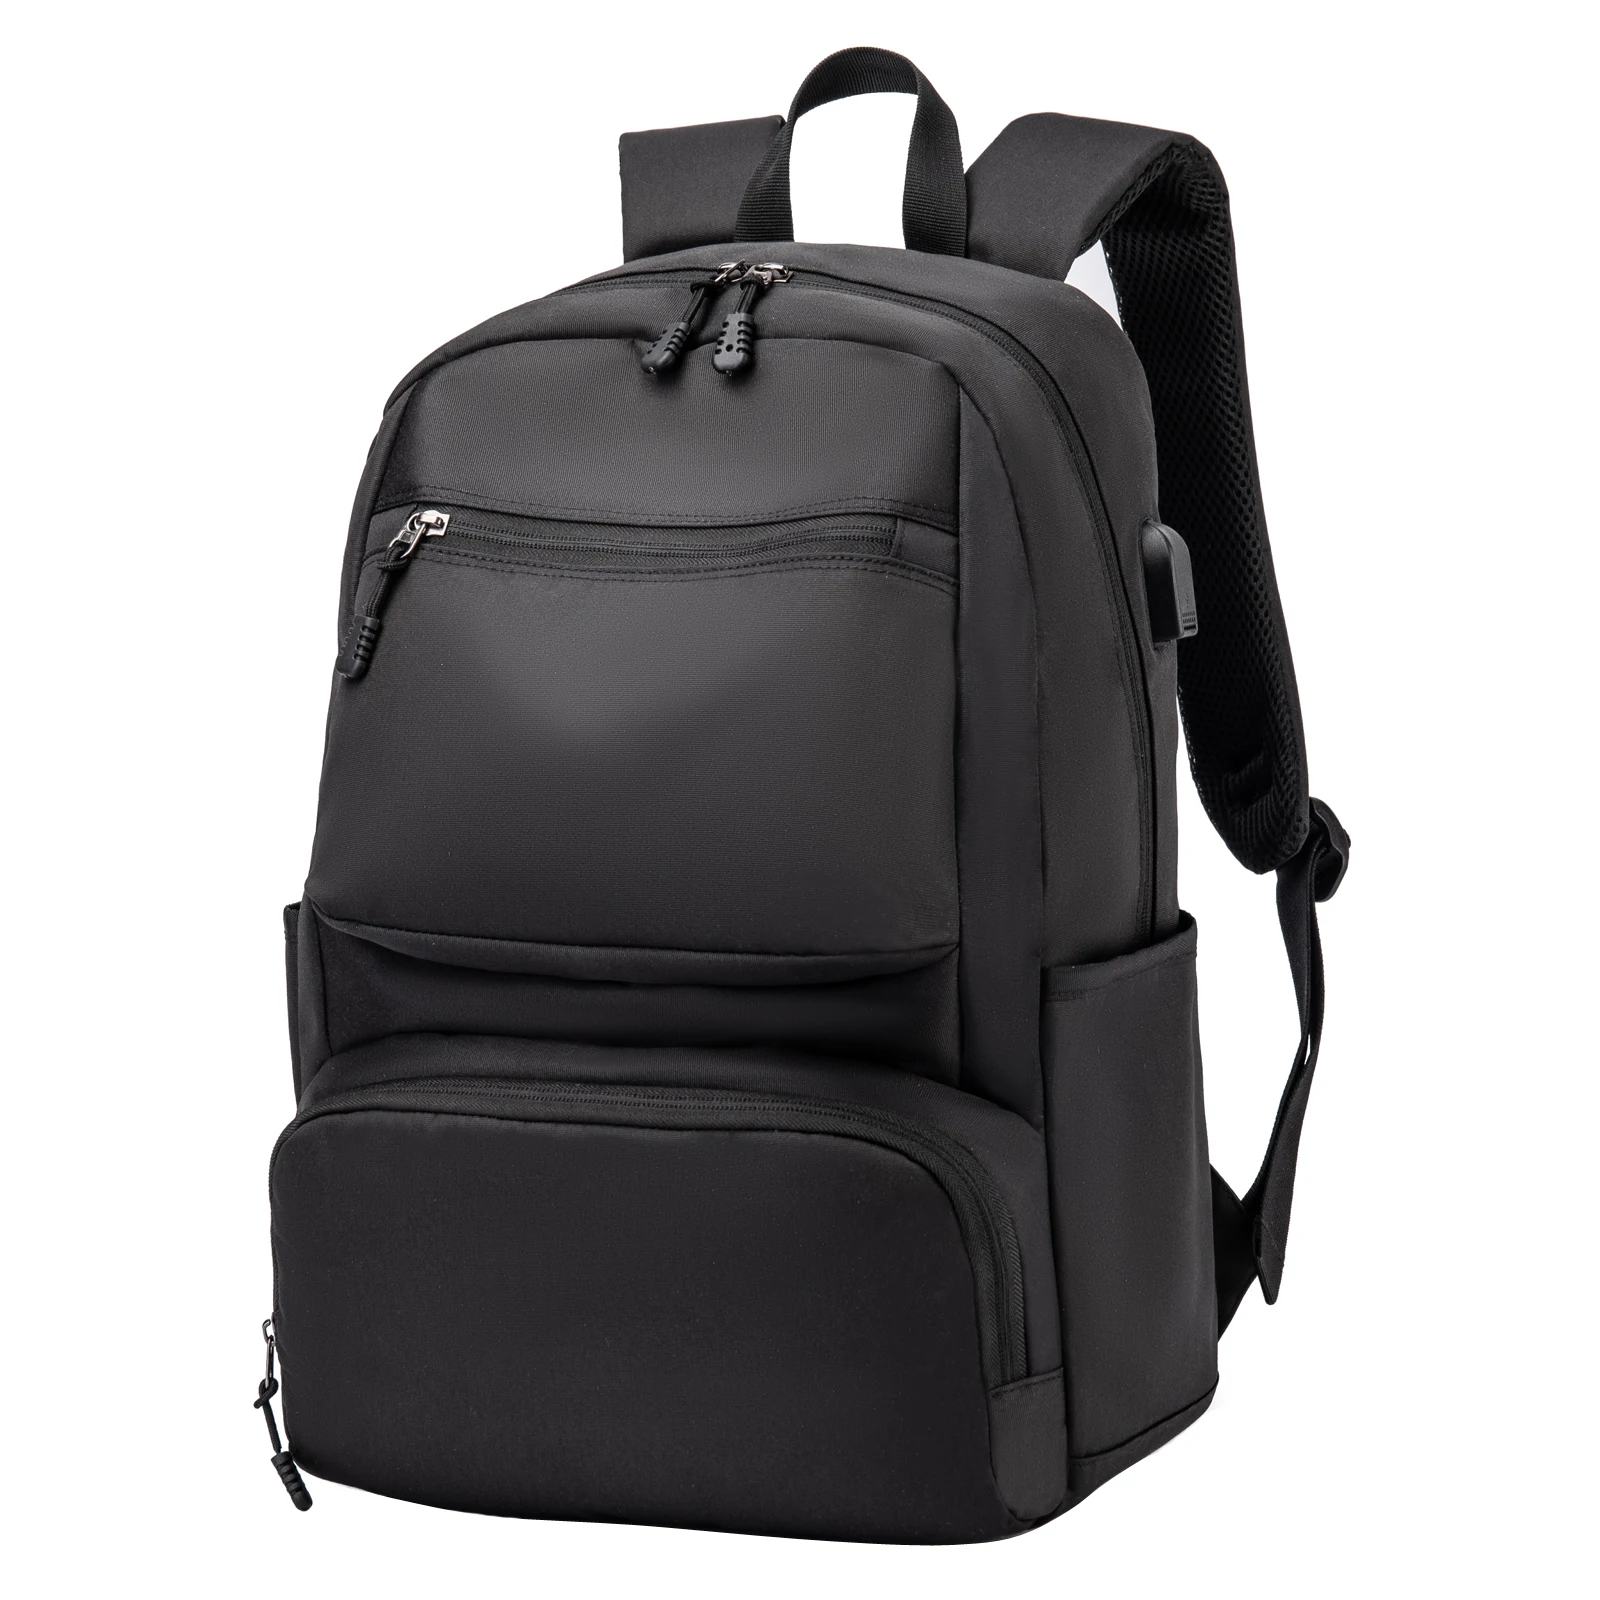 

Водонепроницаемый деловой рюкзак для мужчин, большой мужской портфель с USB-зарядкой и отделением для ноутбука 15,6 дюйма, школьный ранец